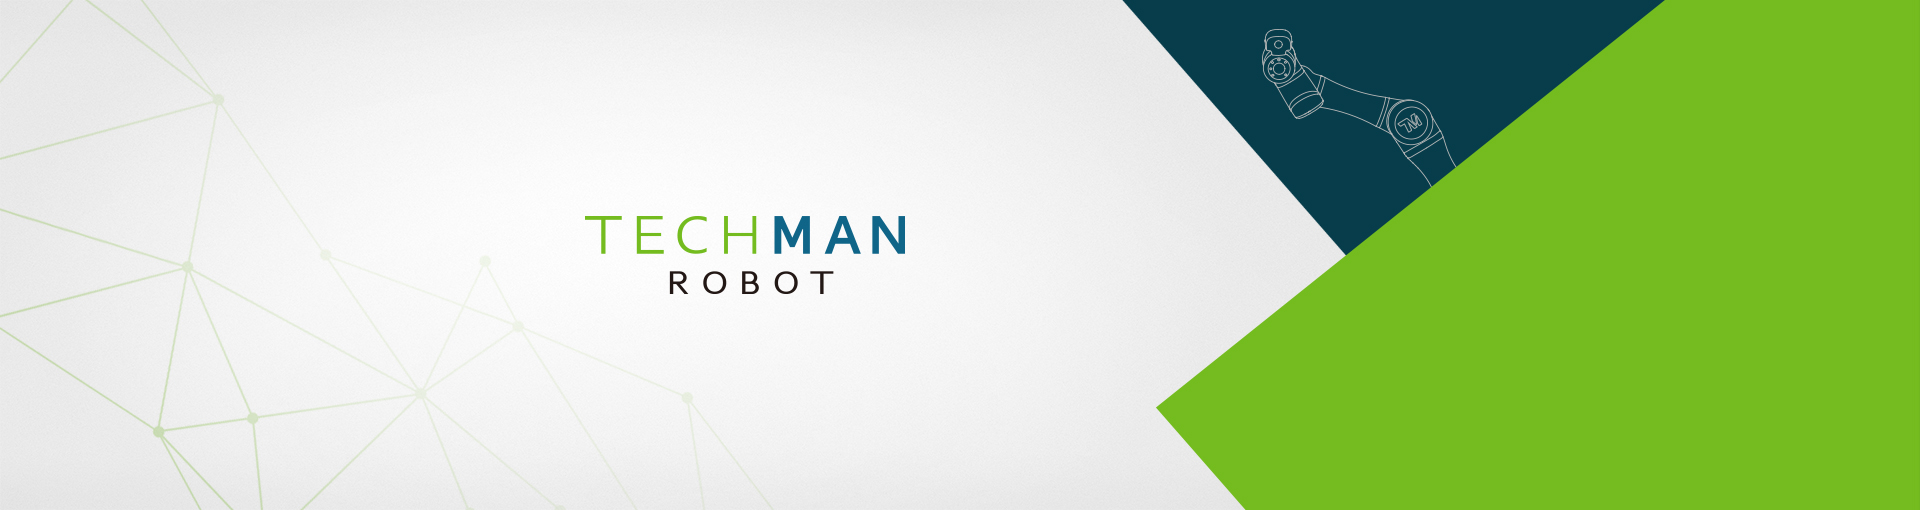 techman-robot-website-banner